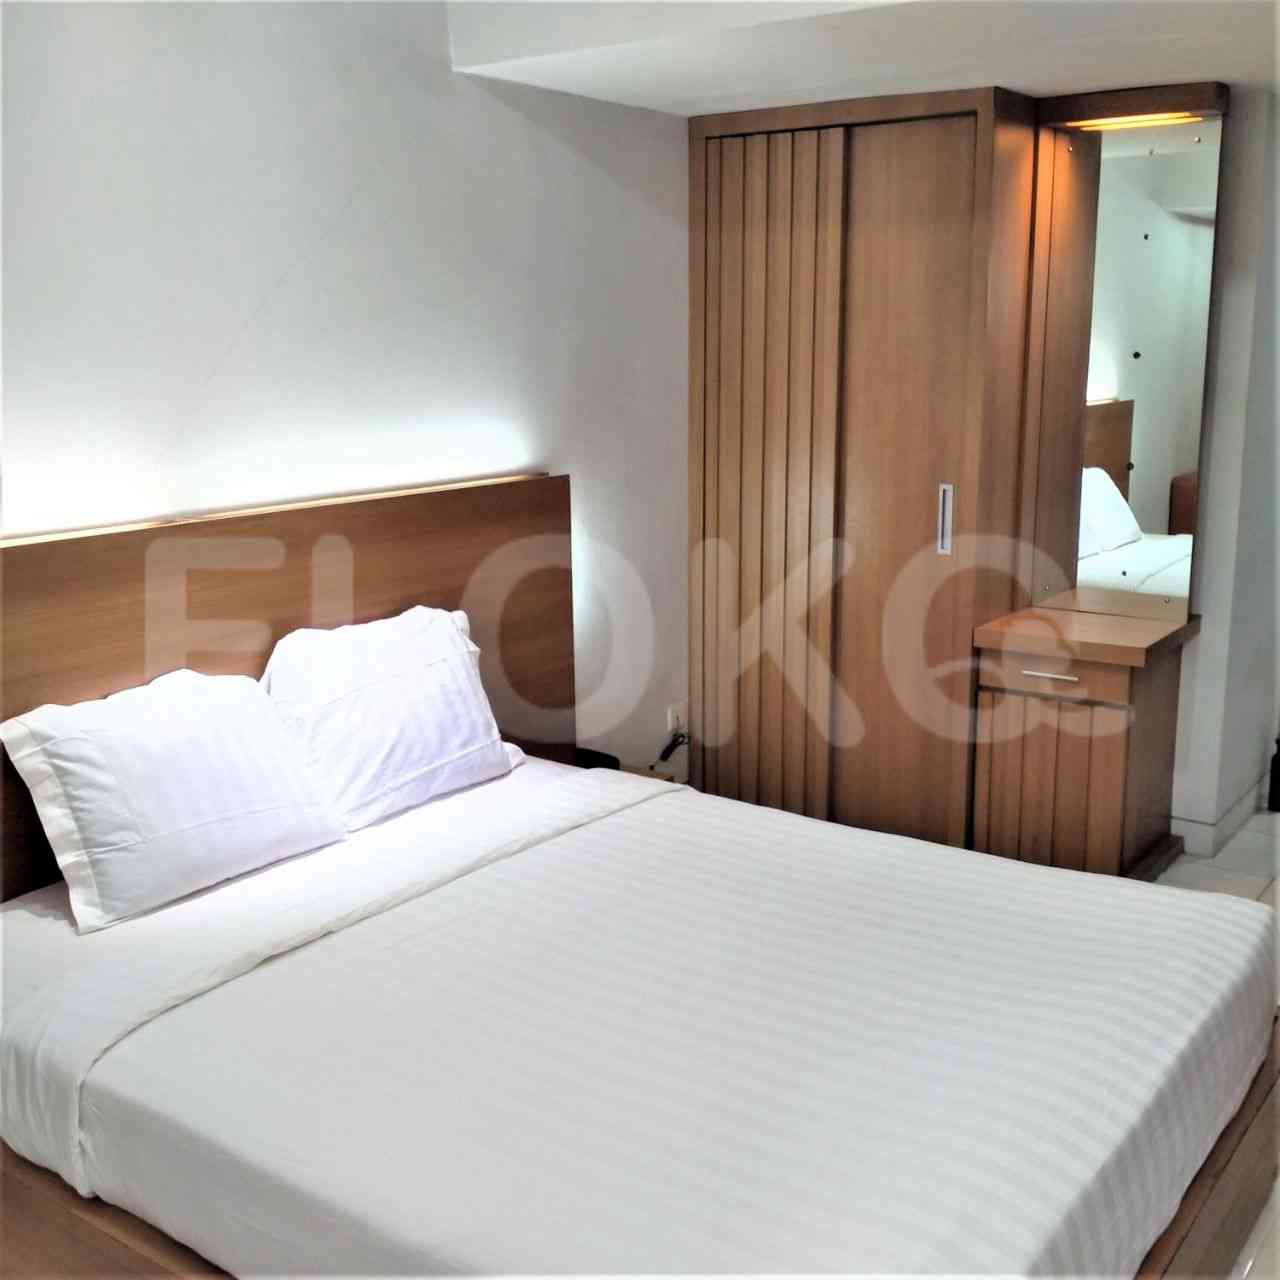 1 Bedroom on 20th Floor for Rent in Tamansari Sudirman - fsu9a8 1